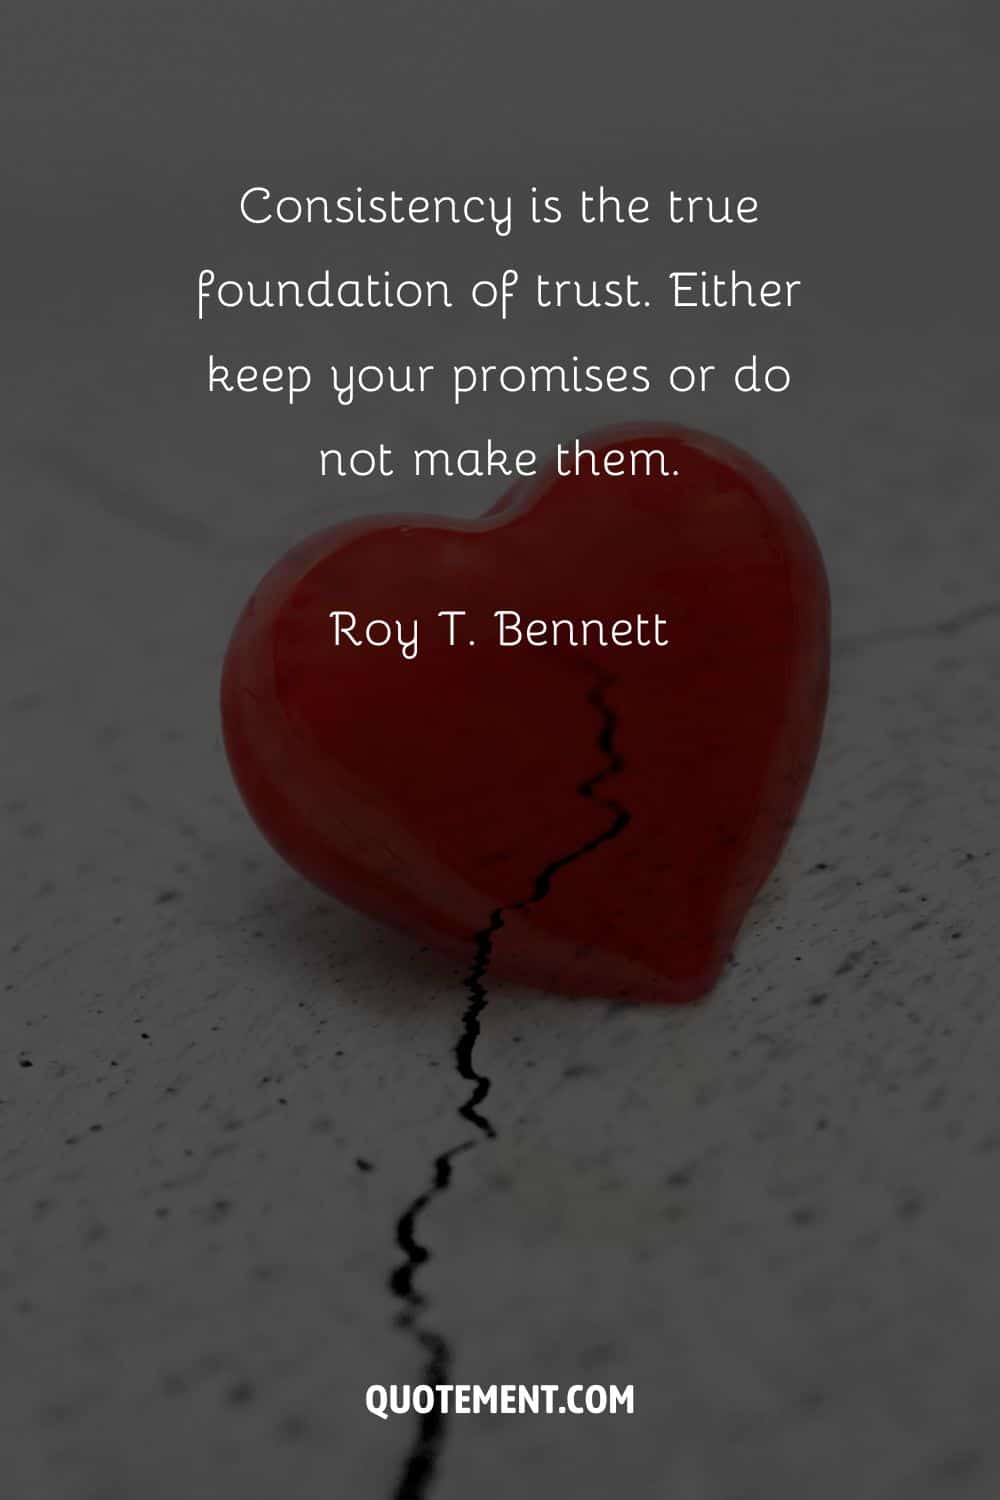 broken heart image representing inspiring breaking trust quote